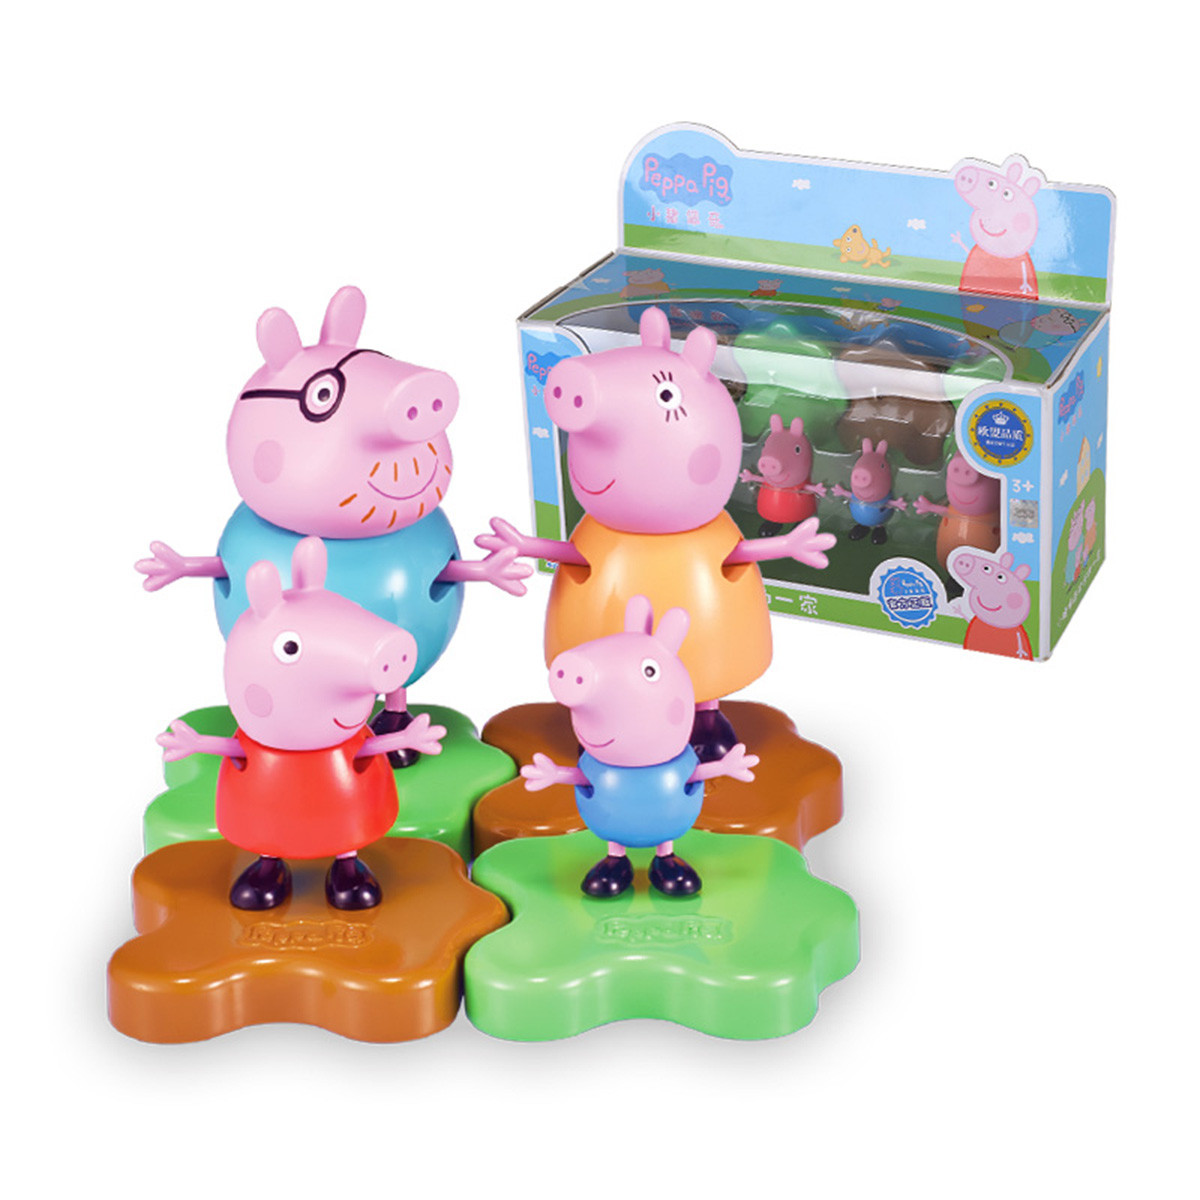 【小猪佩奇】奥迪双钻小猪佩奇系列玩具儿童玩具卡通人物动画人物